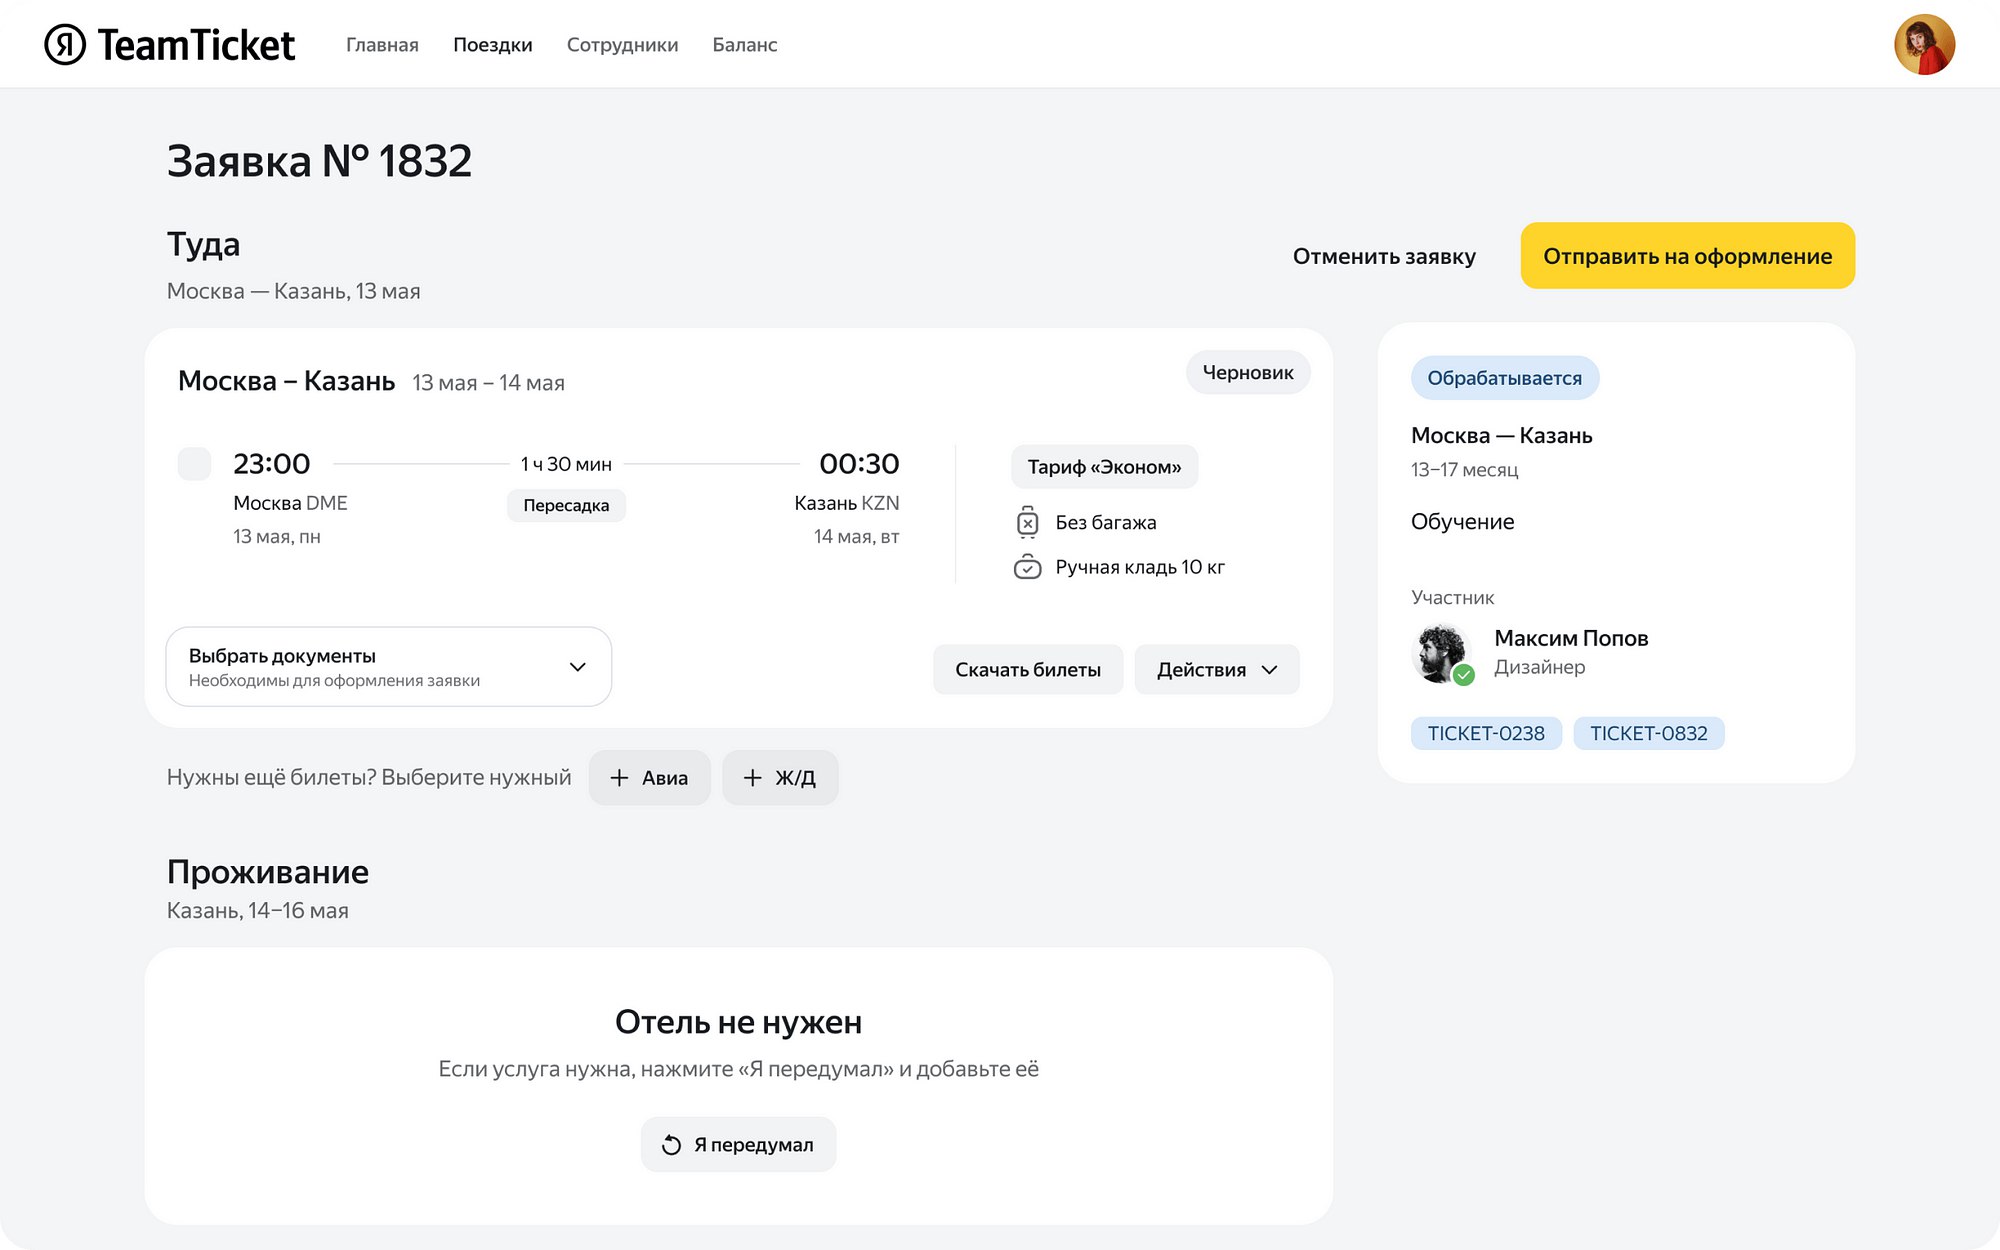 «Яндекс» открыл для всех внутренний сервис для организации командировок TeamTicket